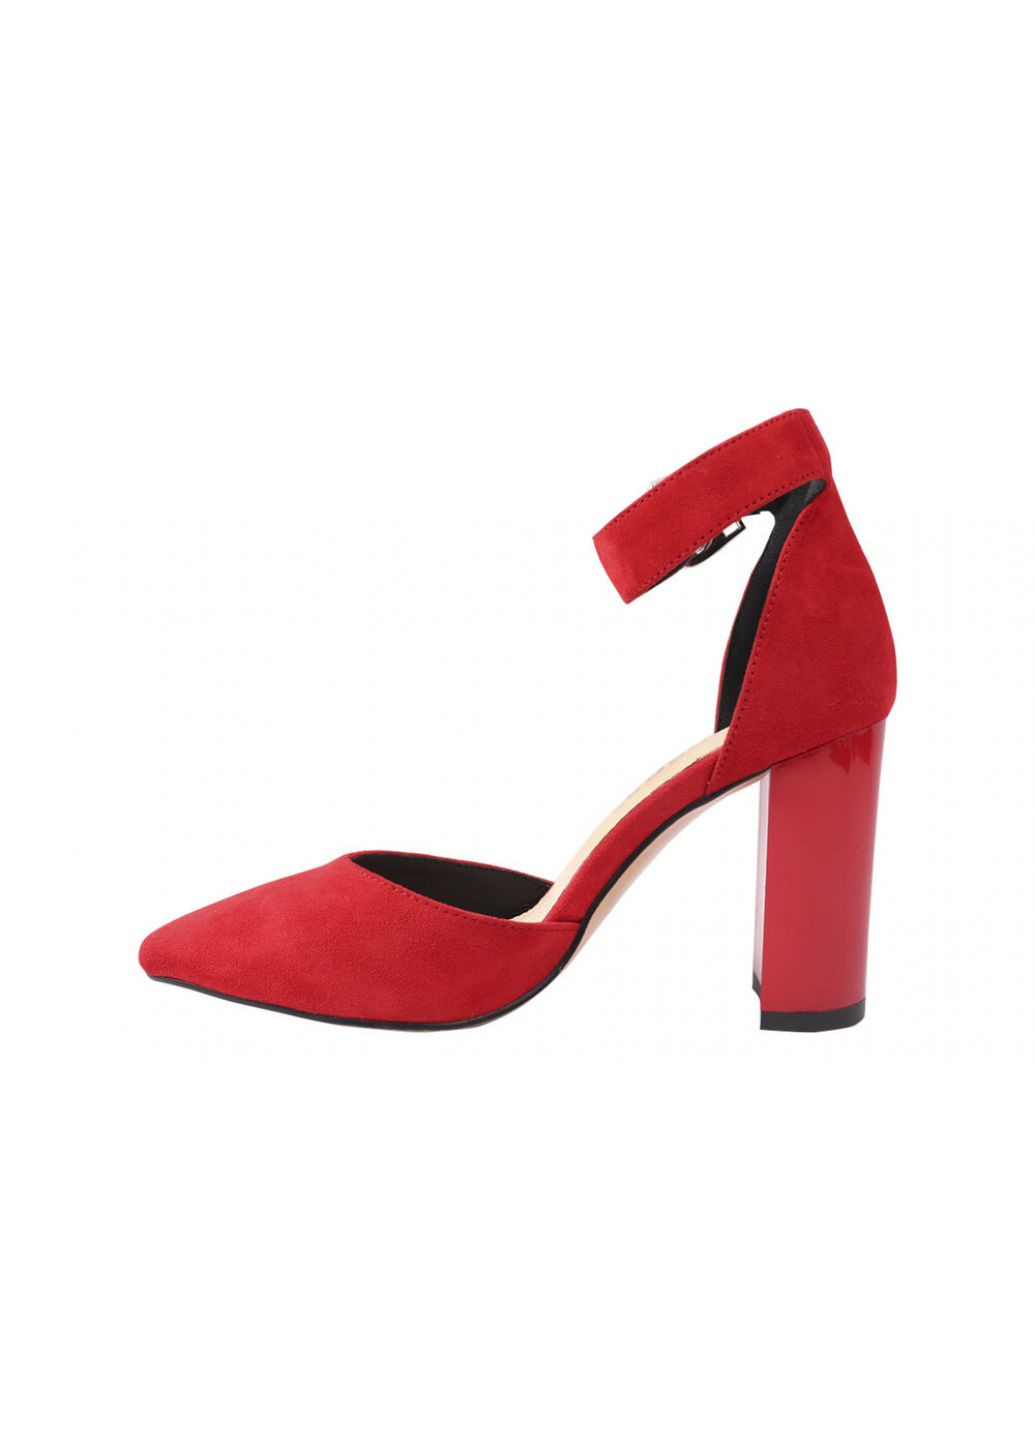 Туфли женские из натуральной замши, на большом каблуке, красные, Erisses